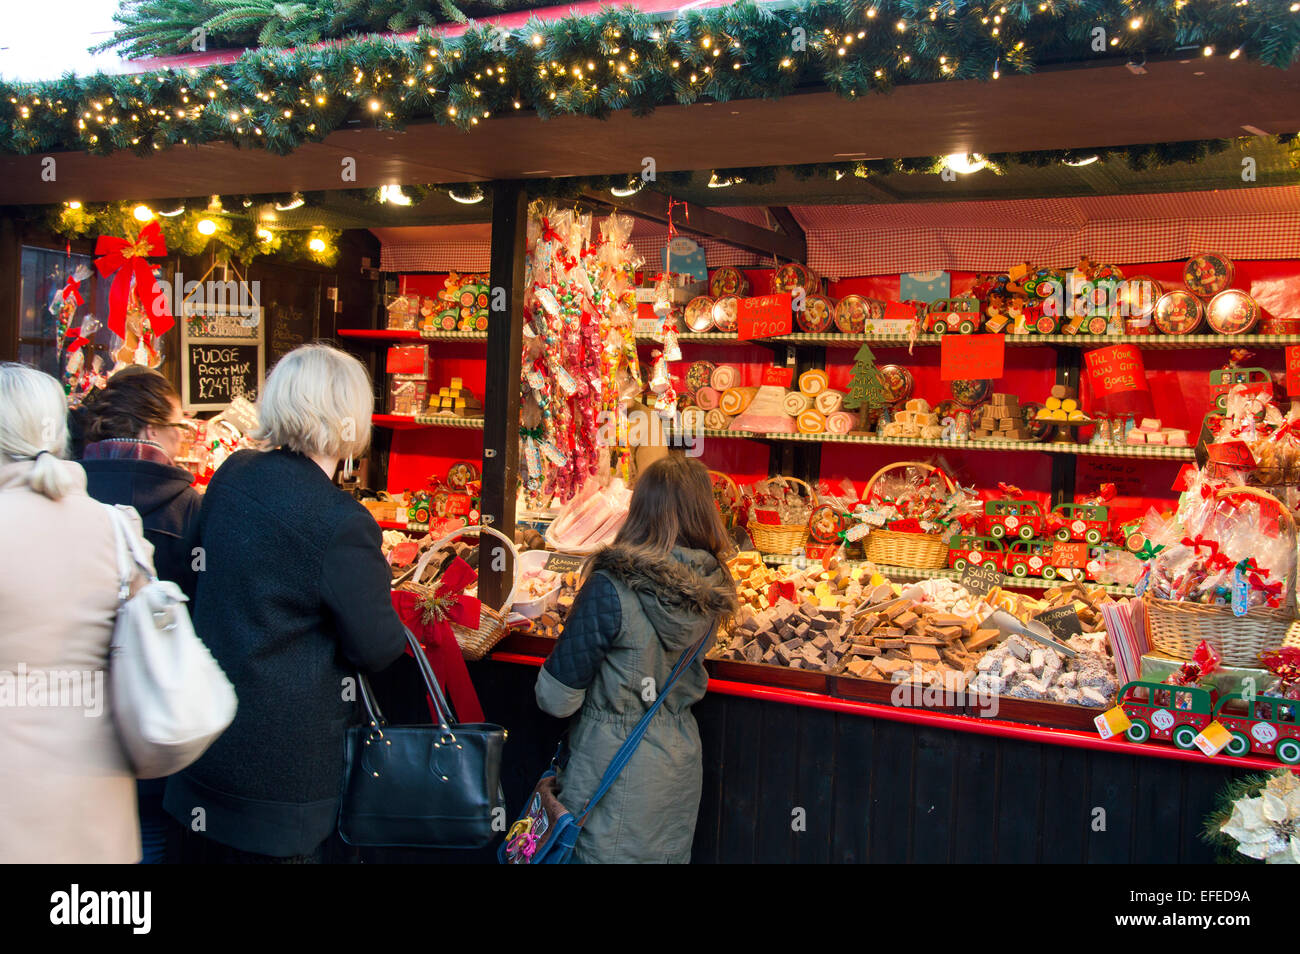 Princes street, Édimbourg, lumières de Noël, des foules, Ecosse, Royaume-Uni Banque D'Images